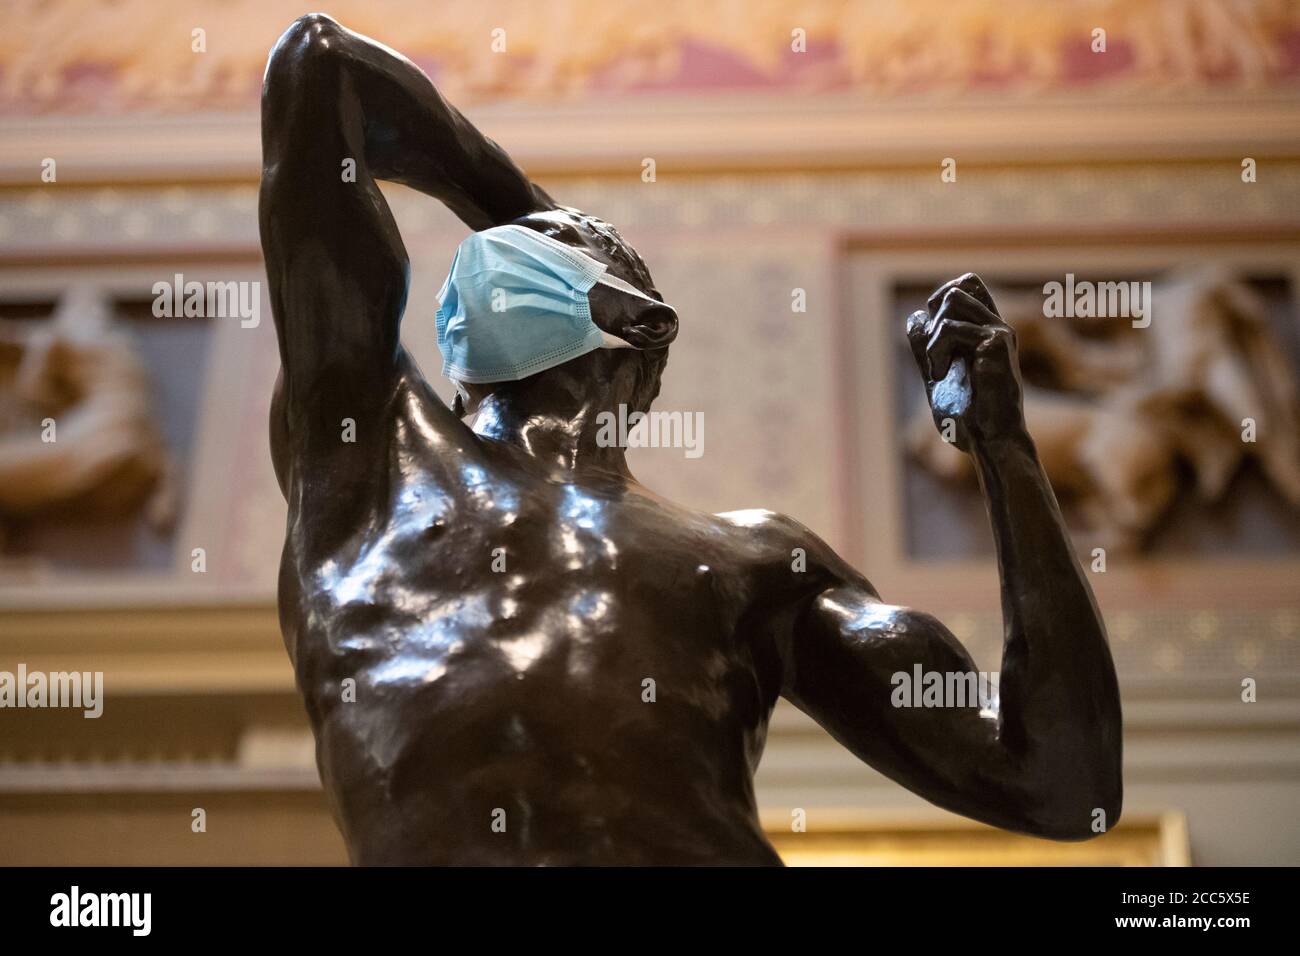 Manchester, Royaume-Uni. 19 août 2020. Une partie de la sculpture Rodin « Eve and Age of Bronze » est visible tandis que la Manchester Art Gallery se prépare à rouvrir ses portes au public le jeudi 20 août après la fermeture temporaire pendant l'épidémie de Covid-19 crédit: Russell Hart/Alamy Live News Banque D'Images